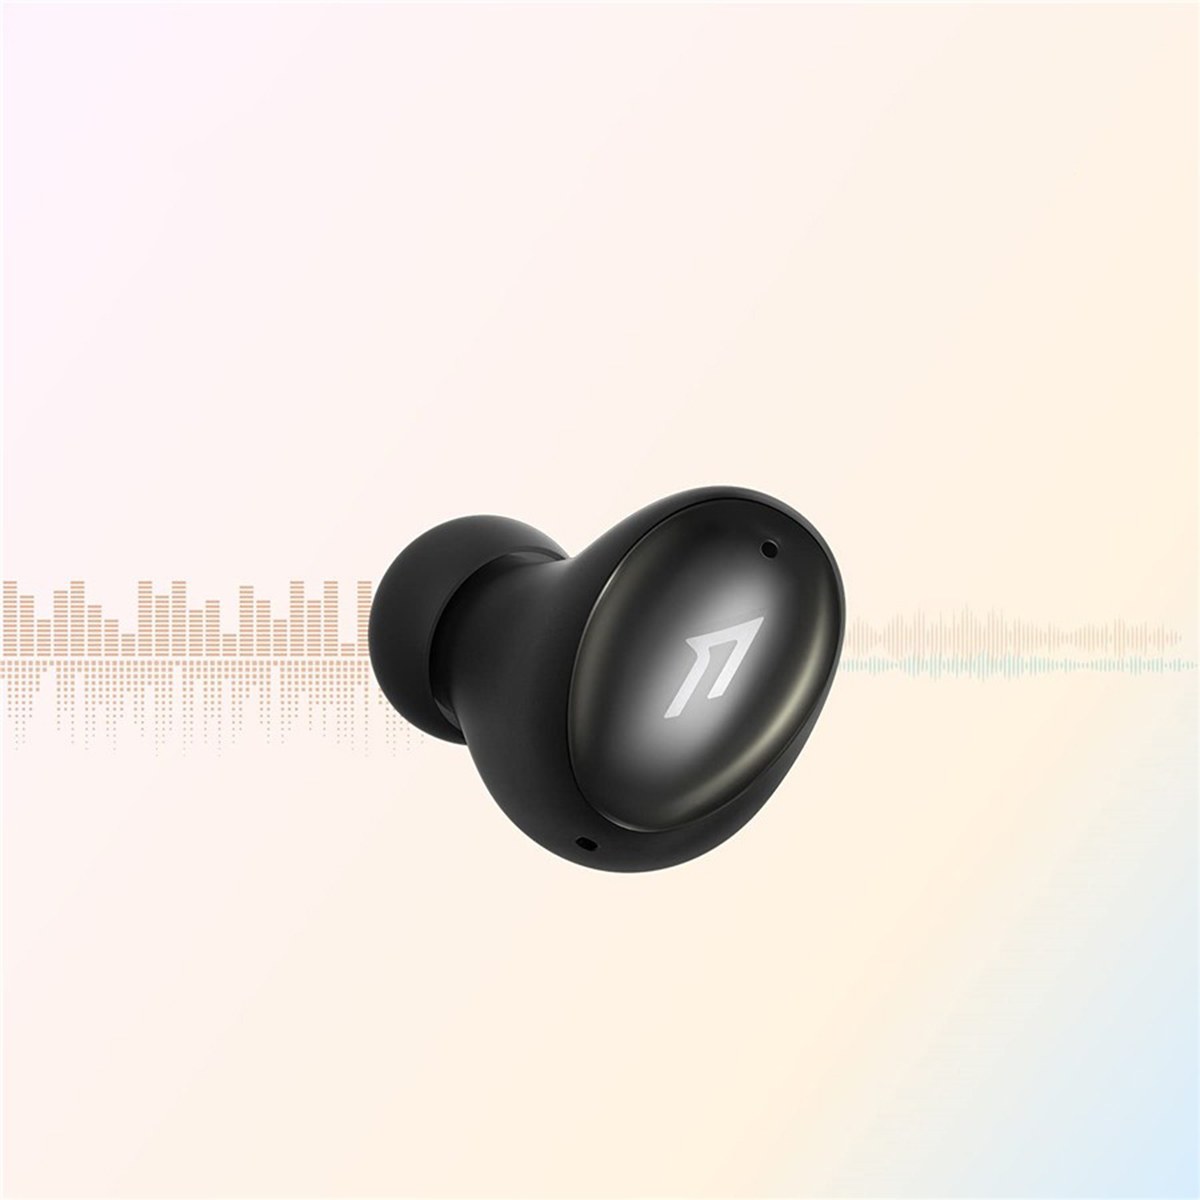 Kabellos Kopfhörer Bluetooth Schwarz ES602 ColorBuds Aufladen, 2 1MORE In-ear